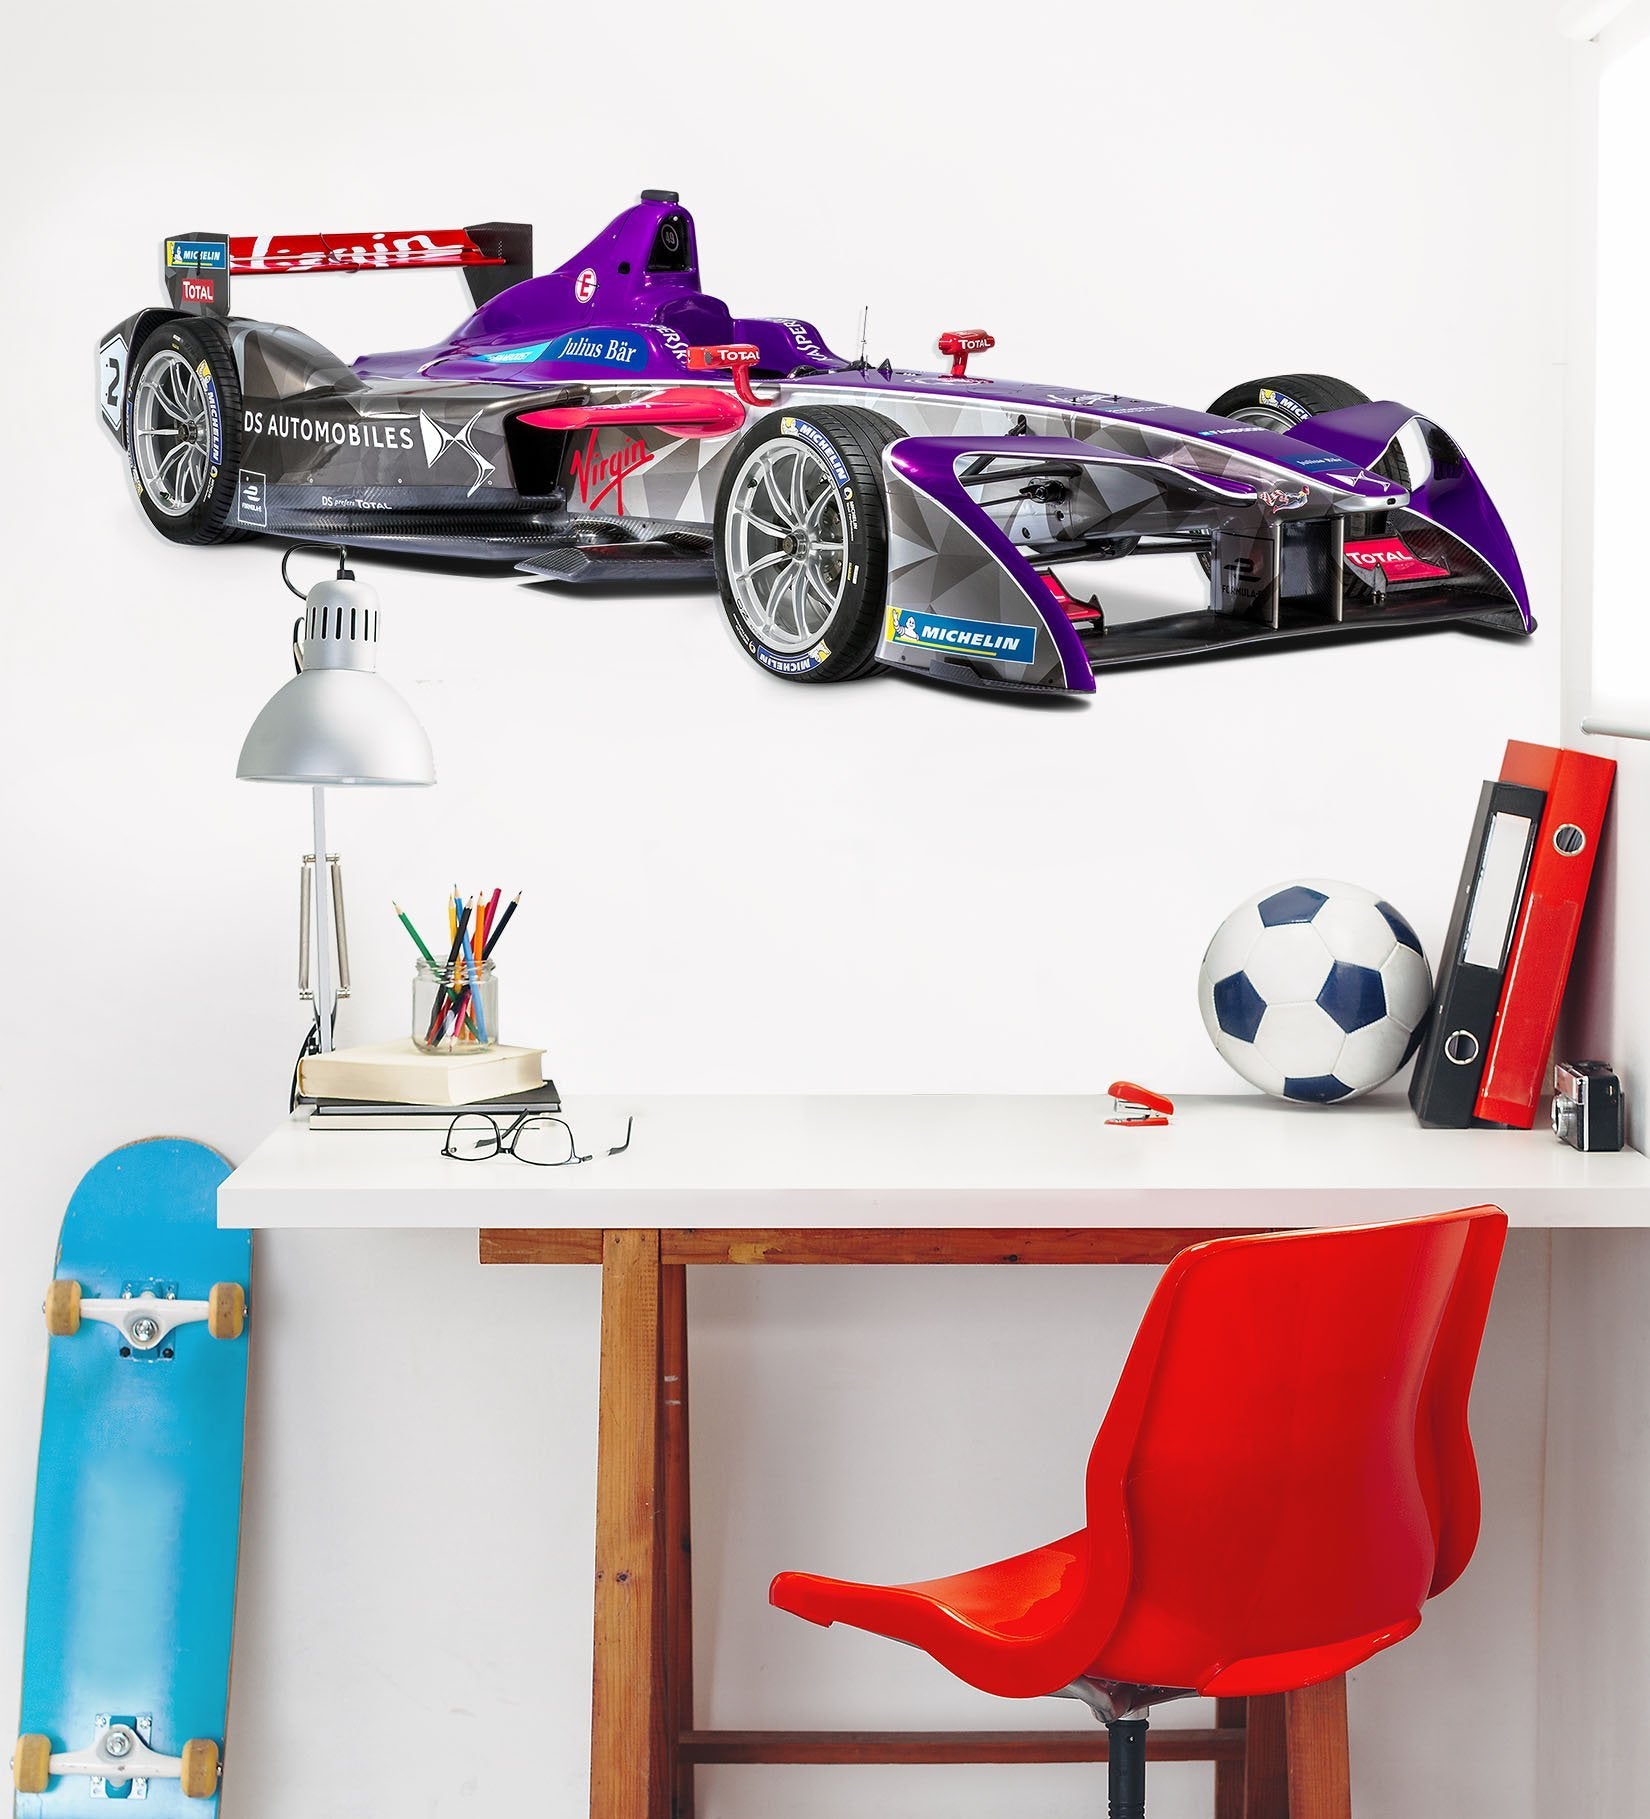 3D Racing Formula 170 Vehicles Wallpaper AJ Wallpaper 